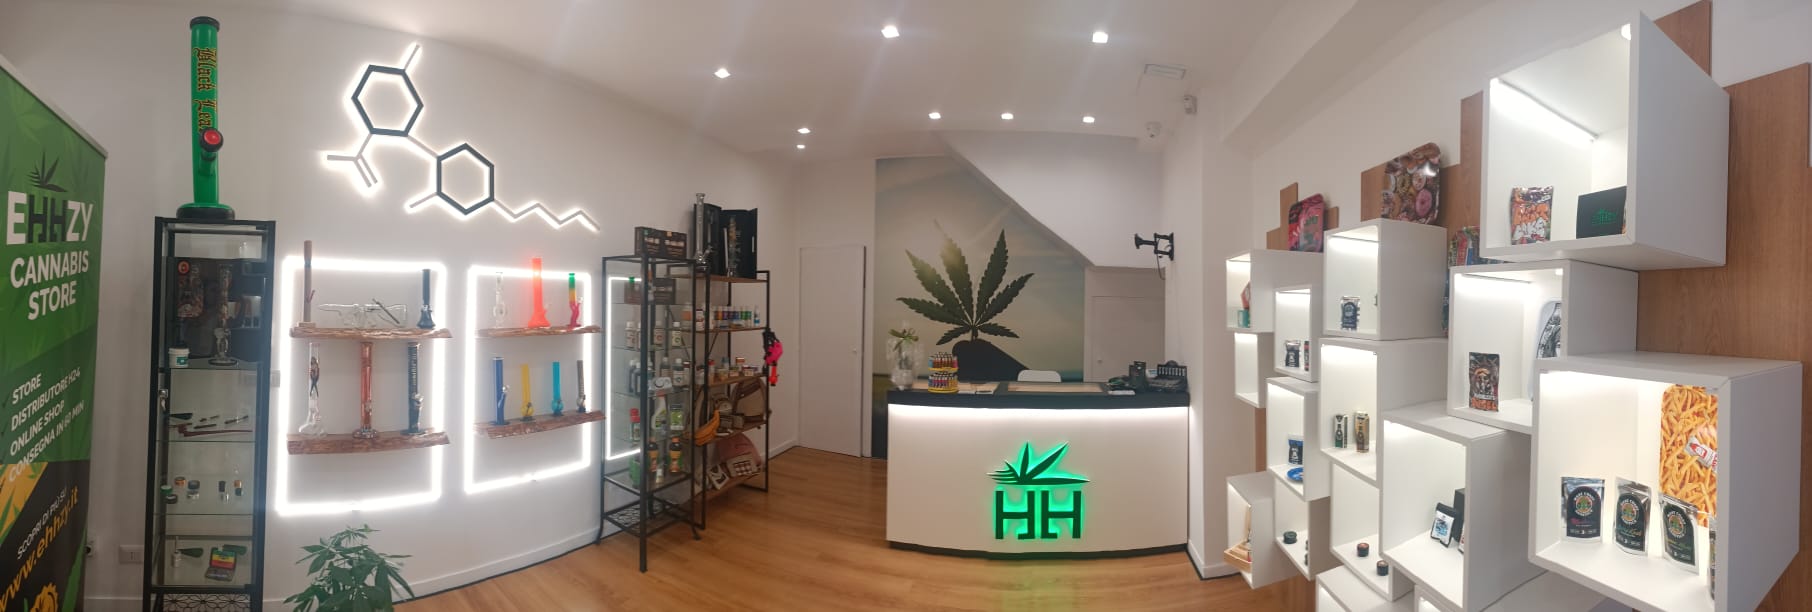 Il sogno di una Puglia sempre più green continua. EHHZY Cannabis Store, la giovane startup barese, arriva anche a Monopoli.